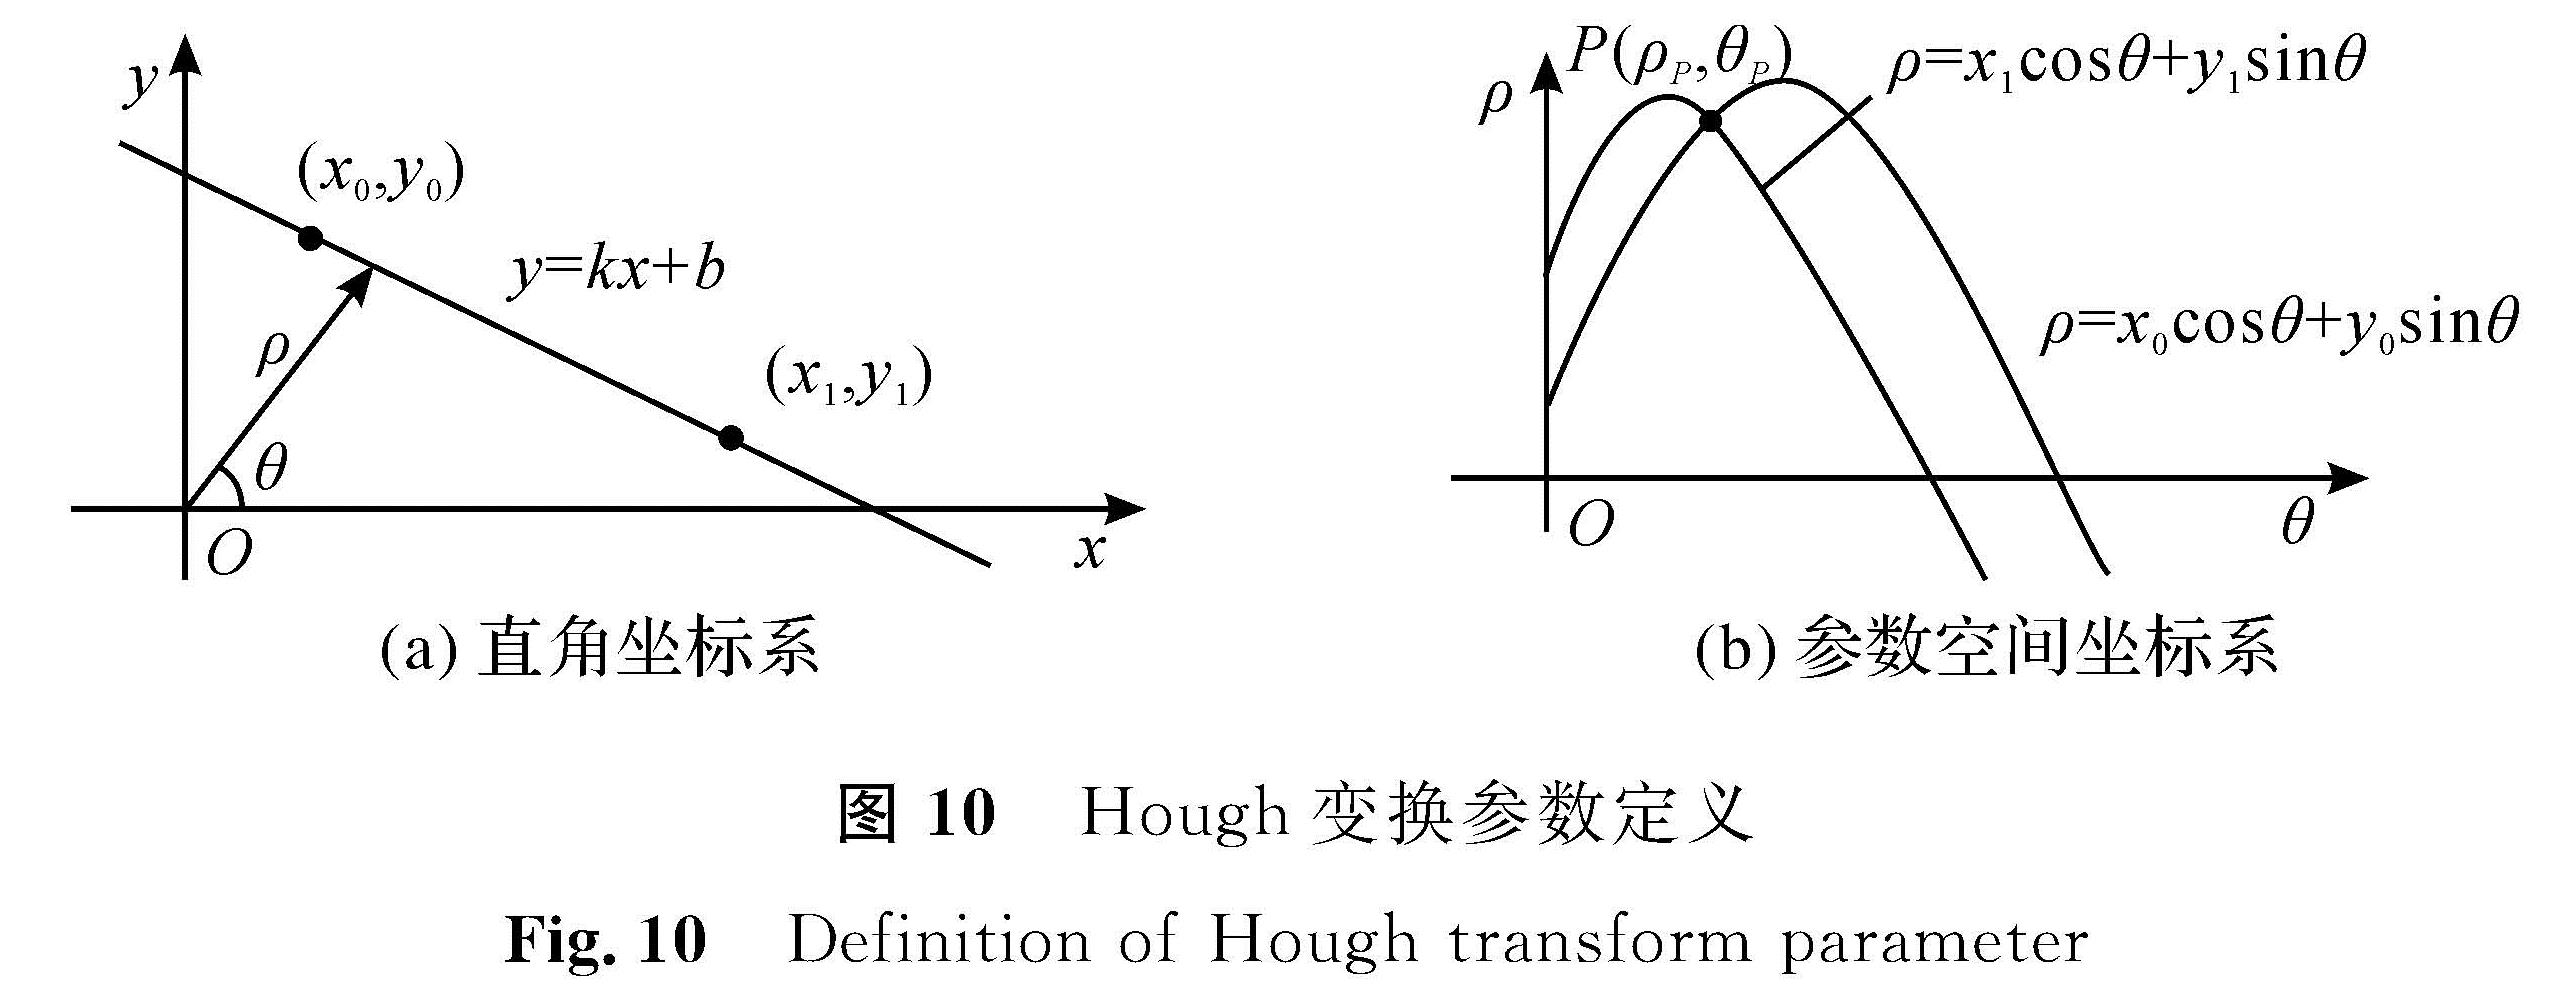 图 10 Hough变换参数定义<br/>Fig.10 Definition of Hough transform parameter